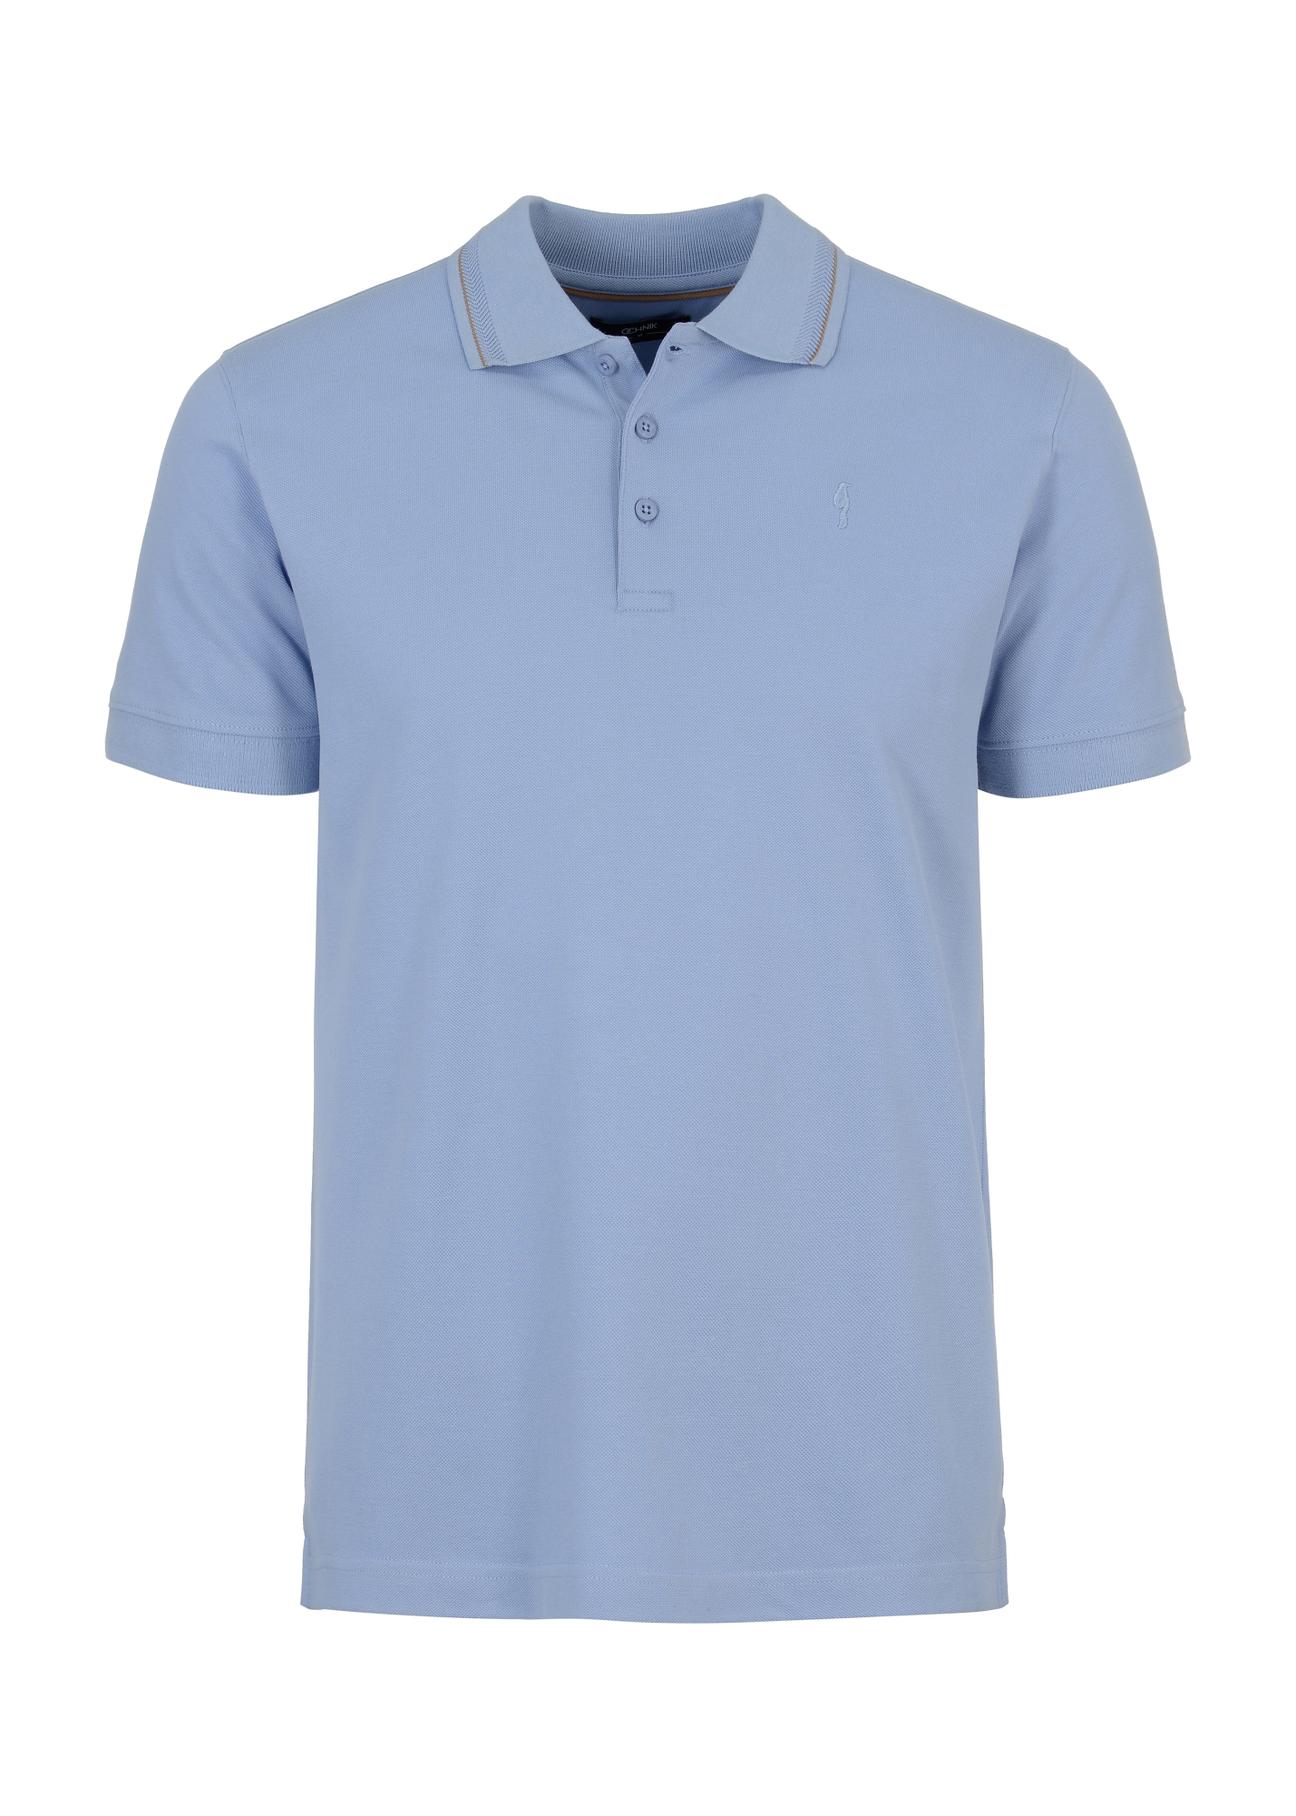 Błękitna koszulka polo z logo POLMT-0056-61(W23)